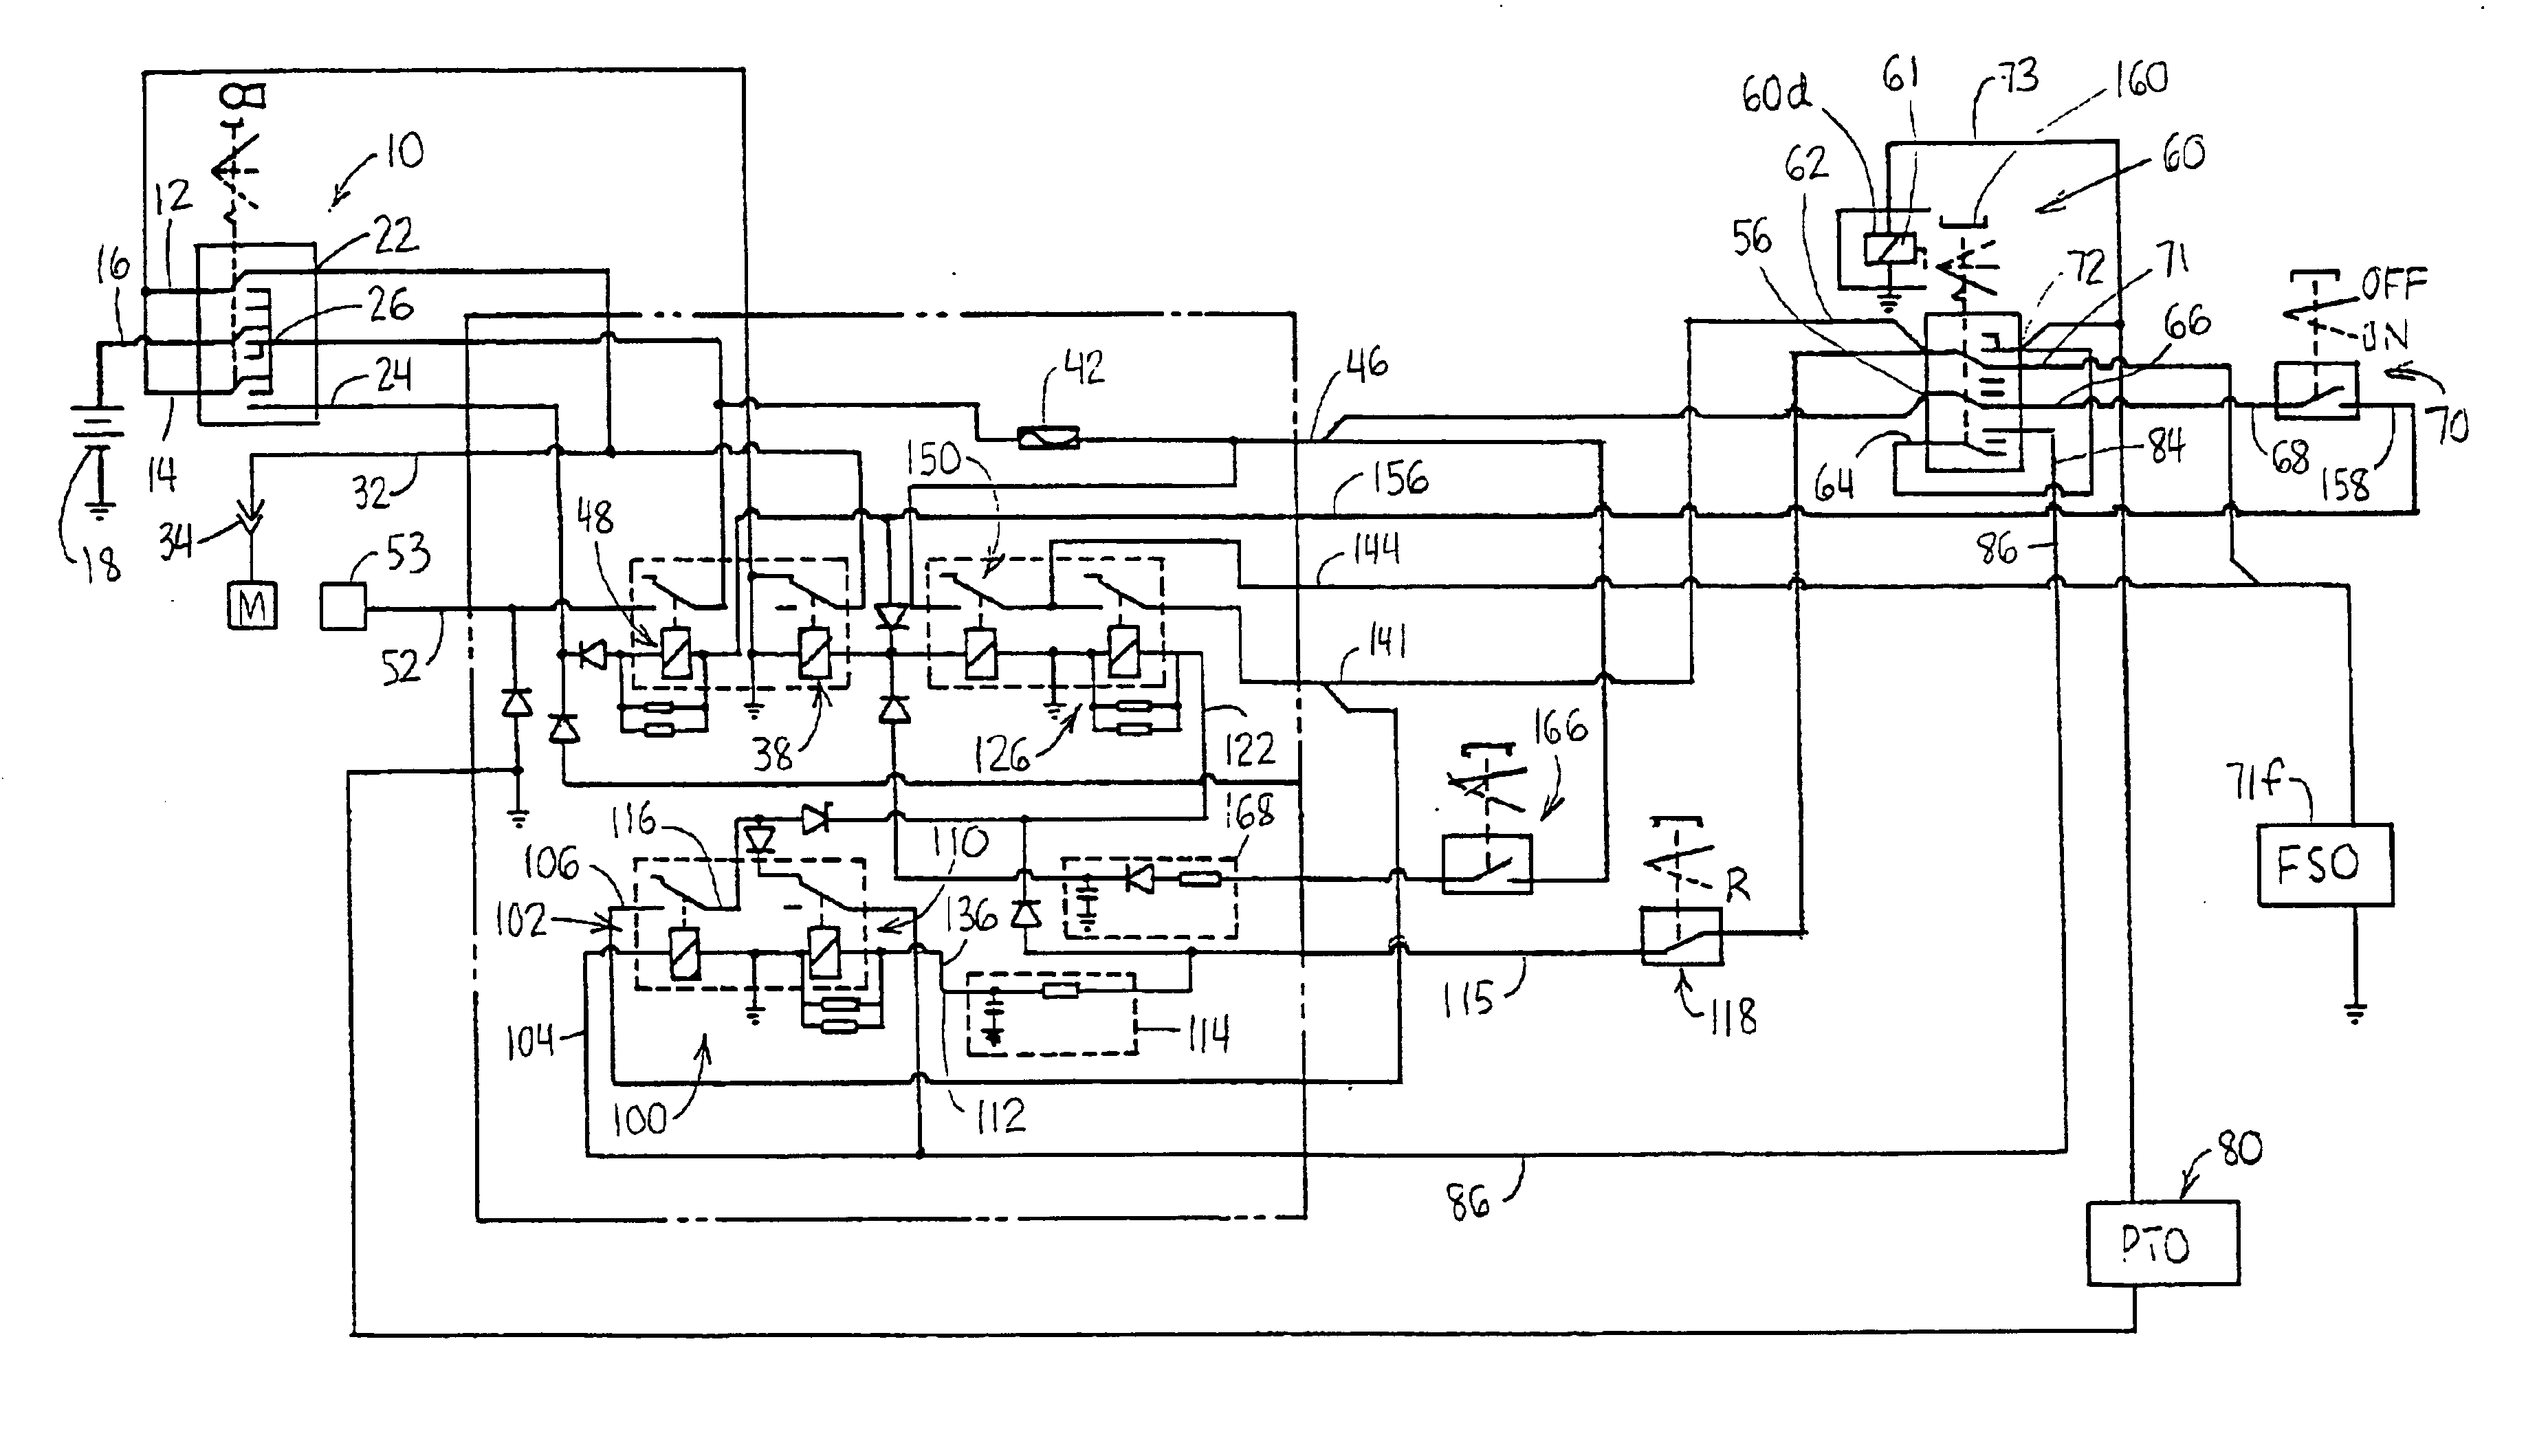 kbic-120 wiring diagram